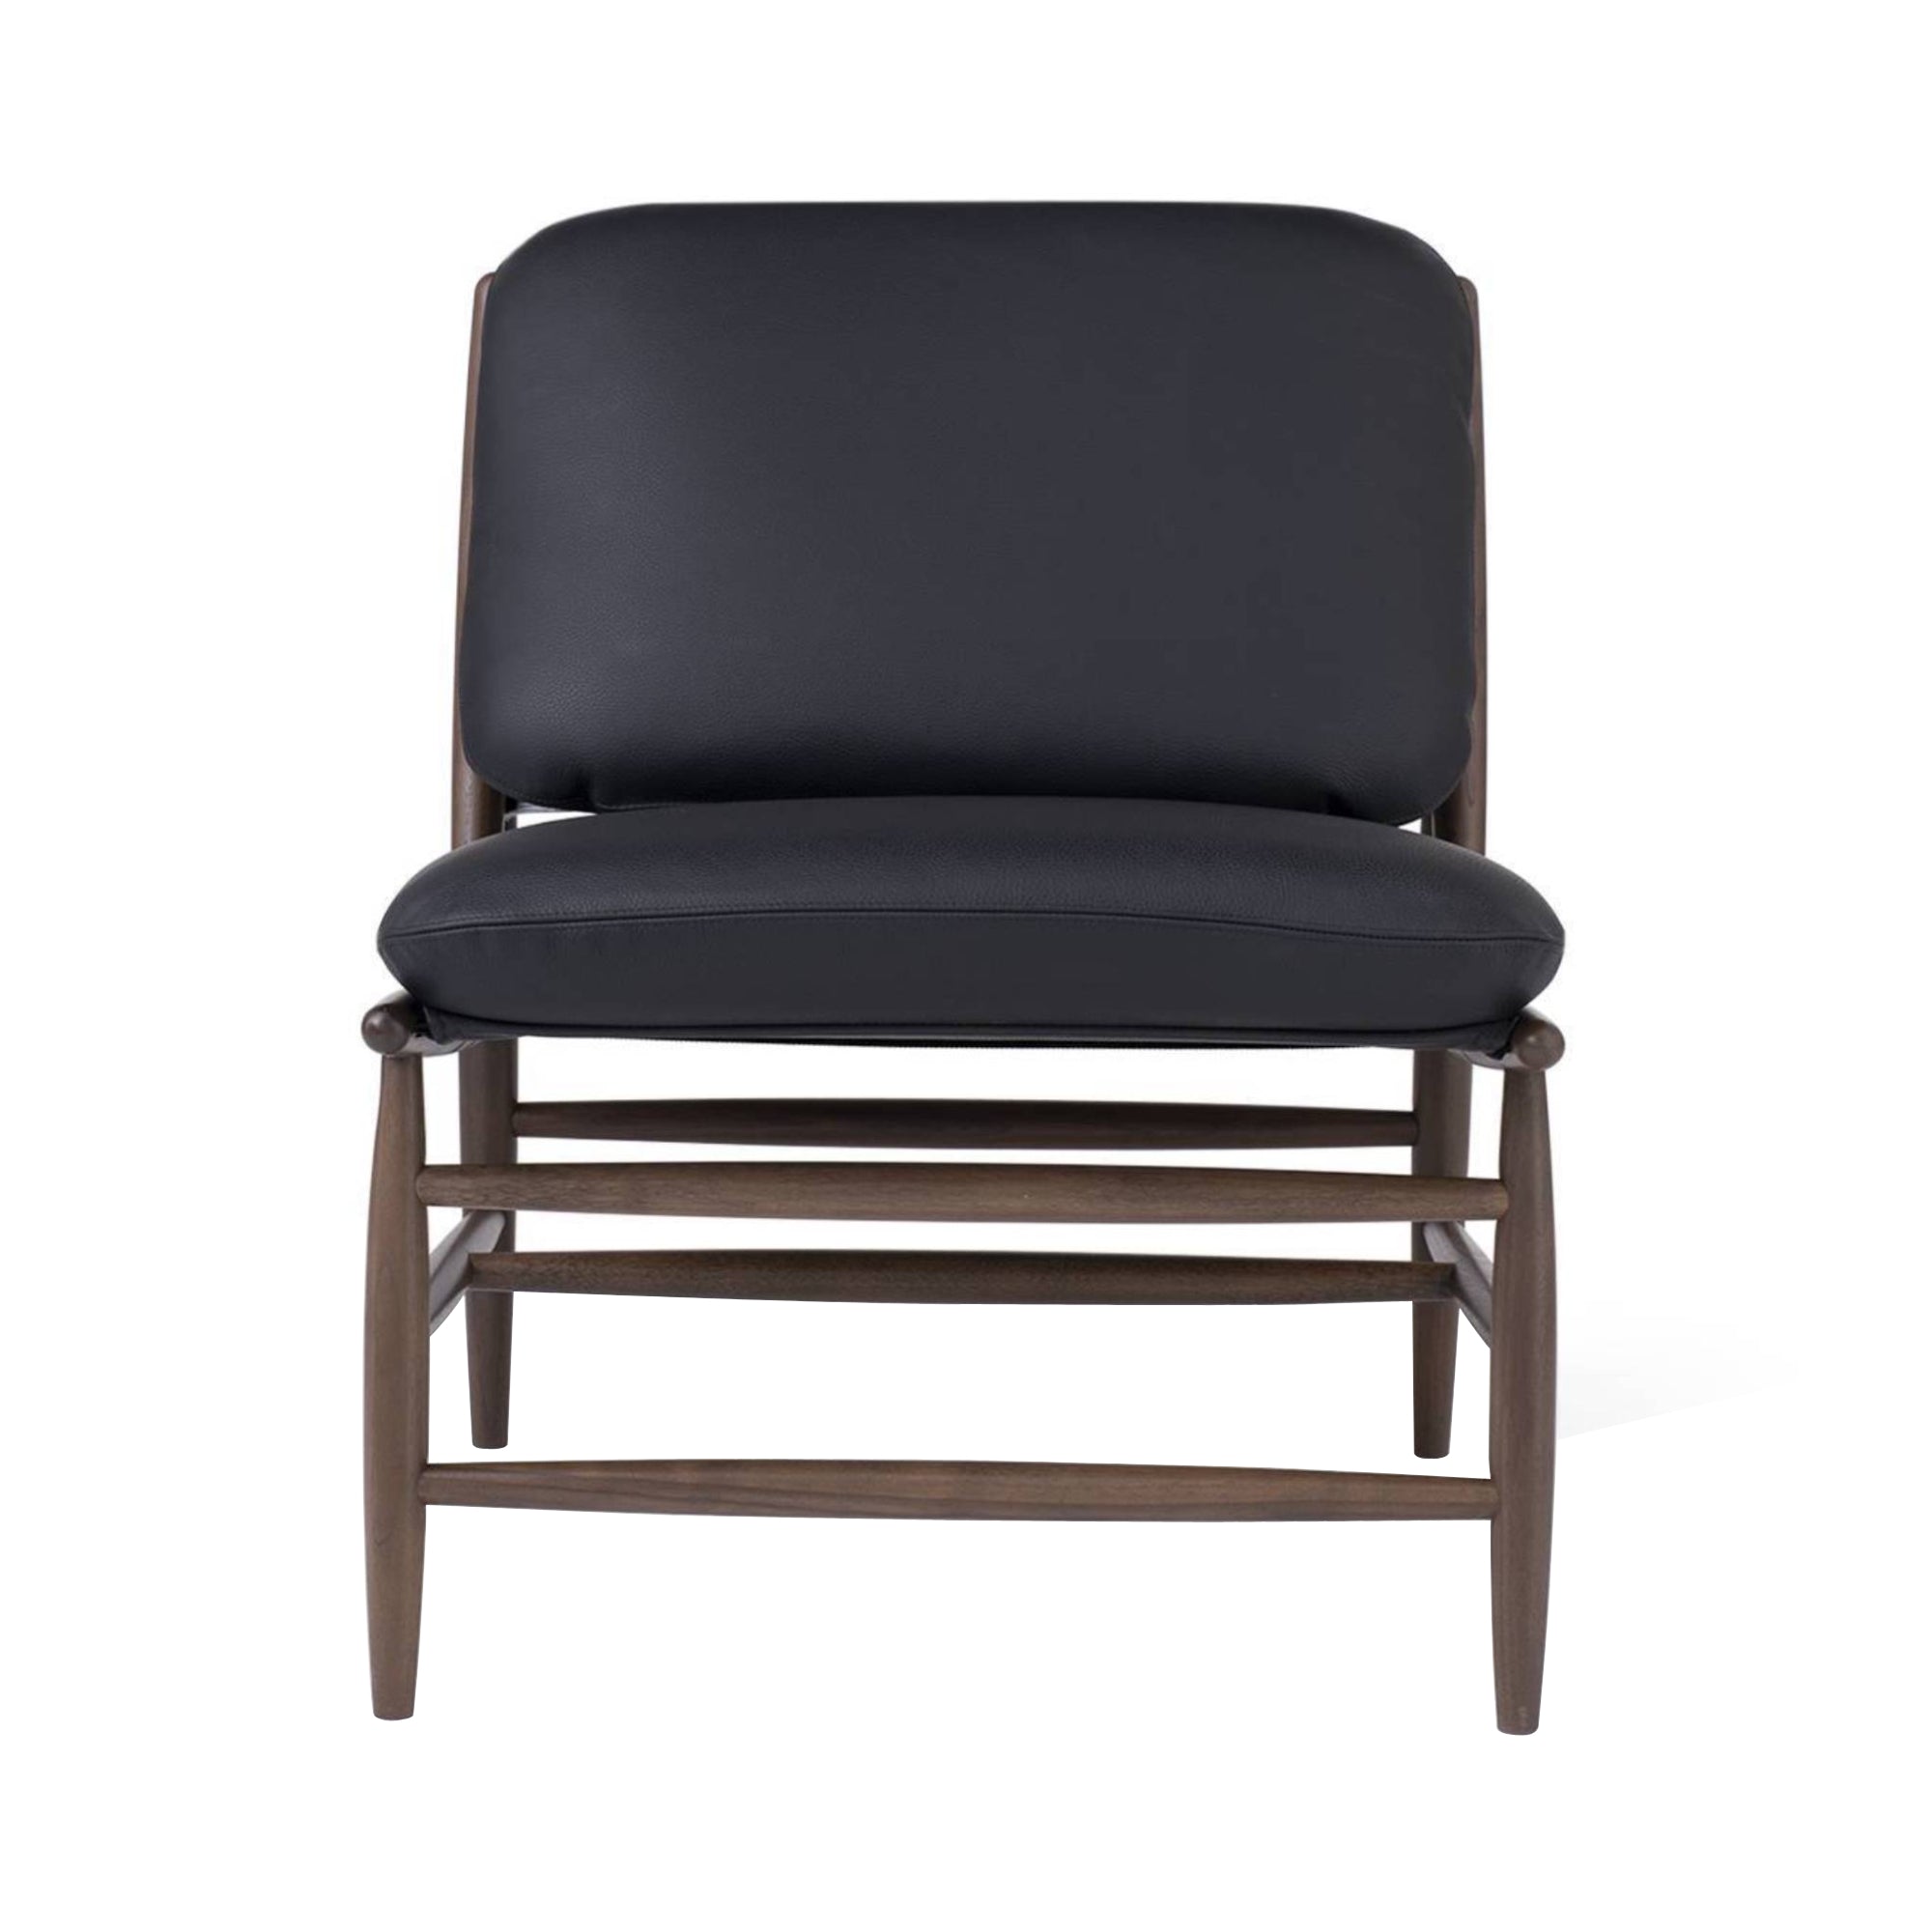 Von Chair: Walnut + Leather